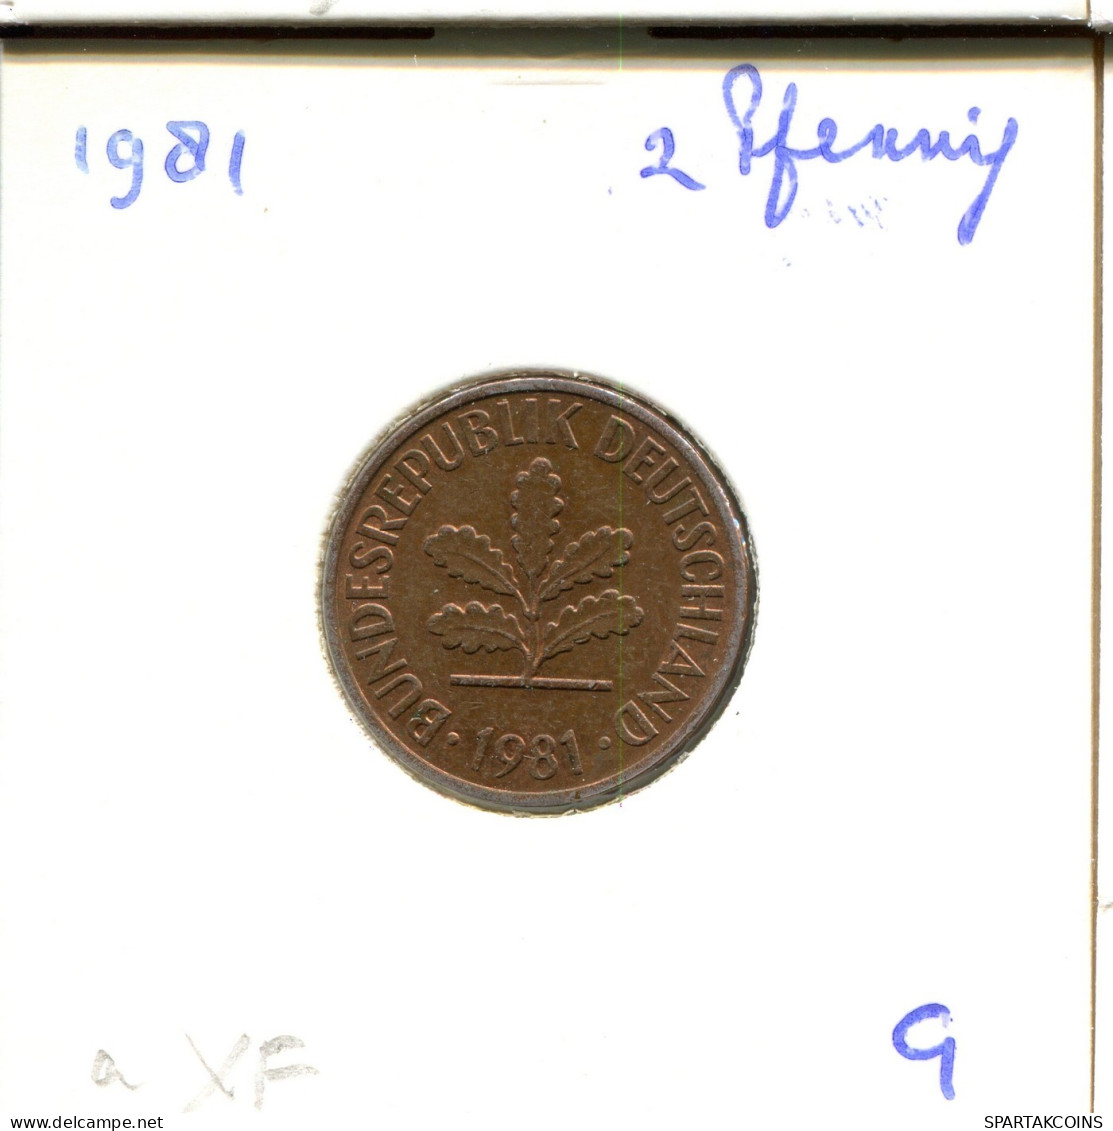 2 PFENNIG 1981 G BRD ALEMANIA Moneda GERMANY #DB029.E.A - 2 Pfennig